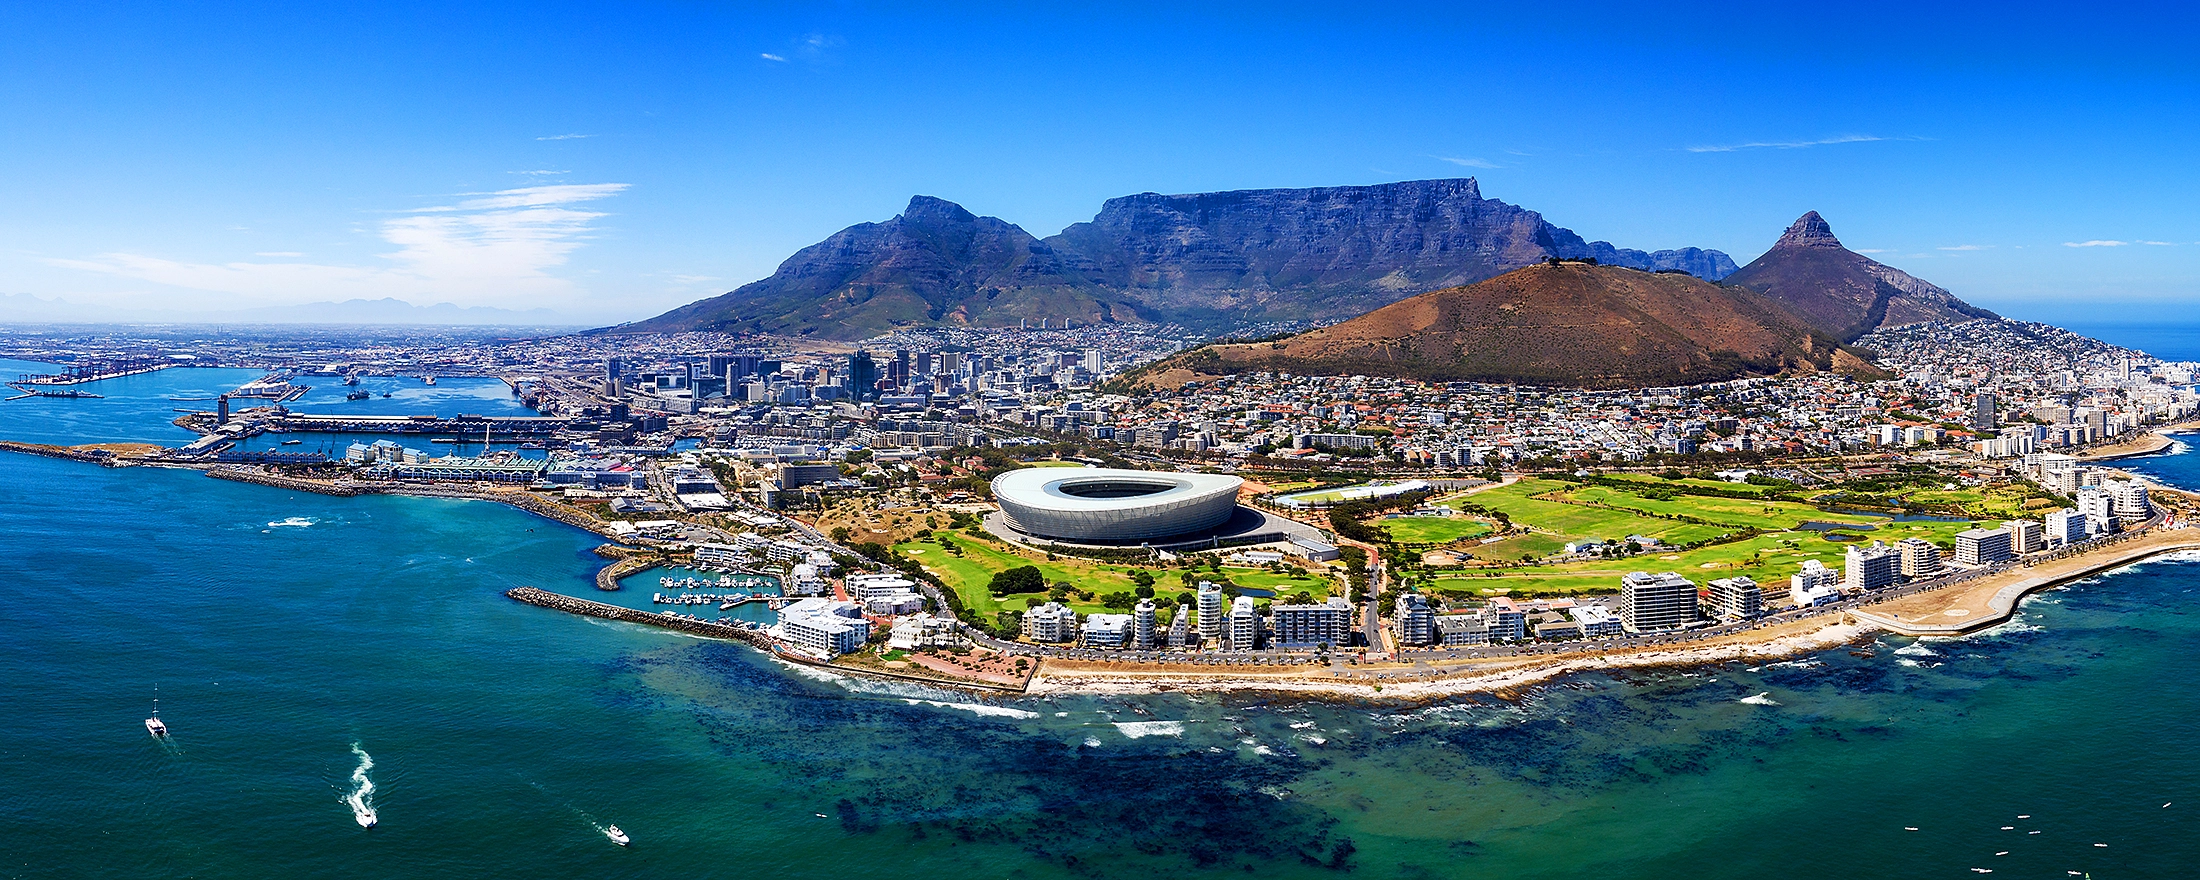 Le nombre des visiteurs en Afrique du Sud en hausse après la Covid-19